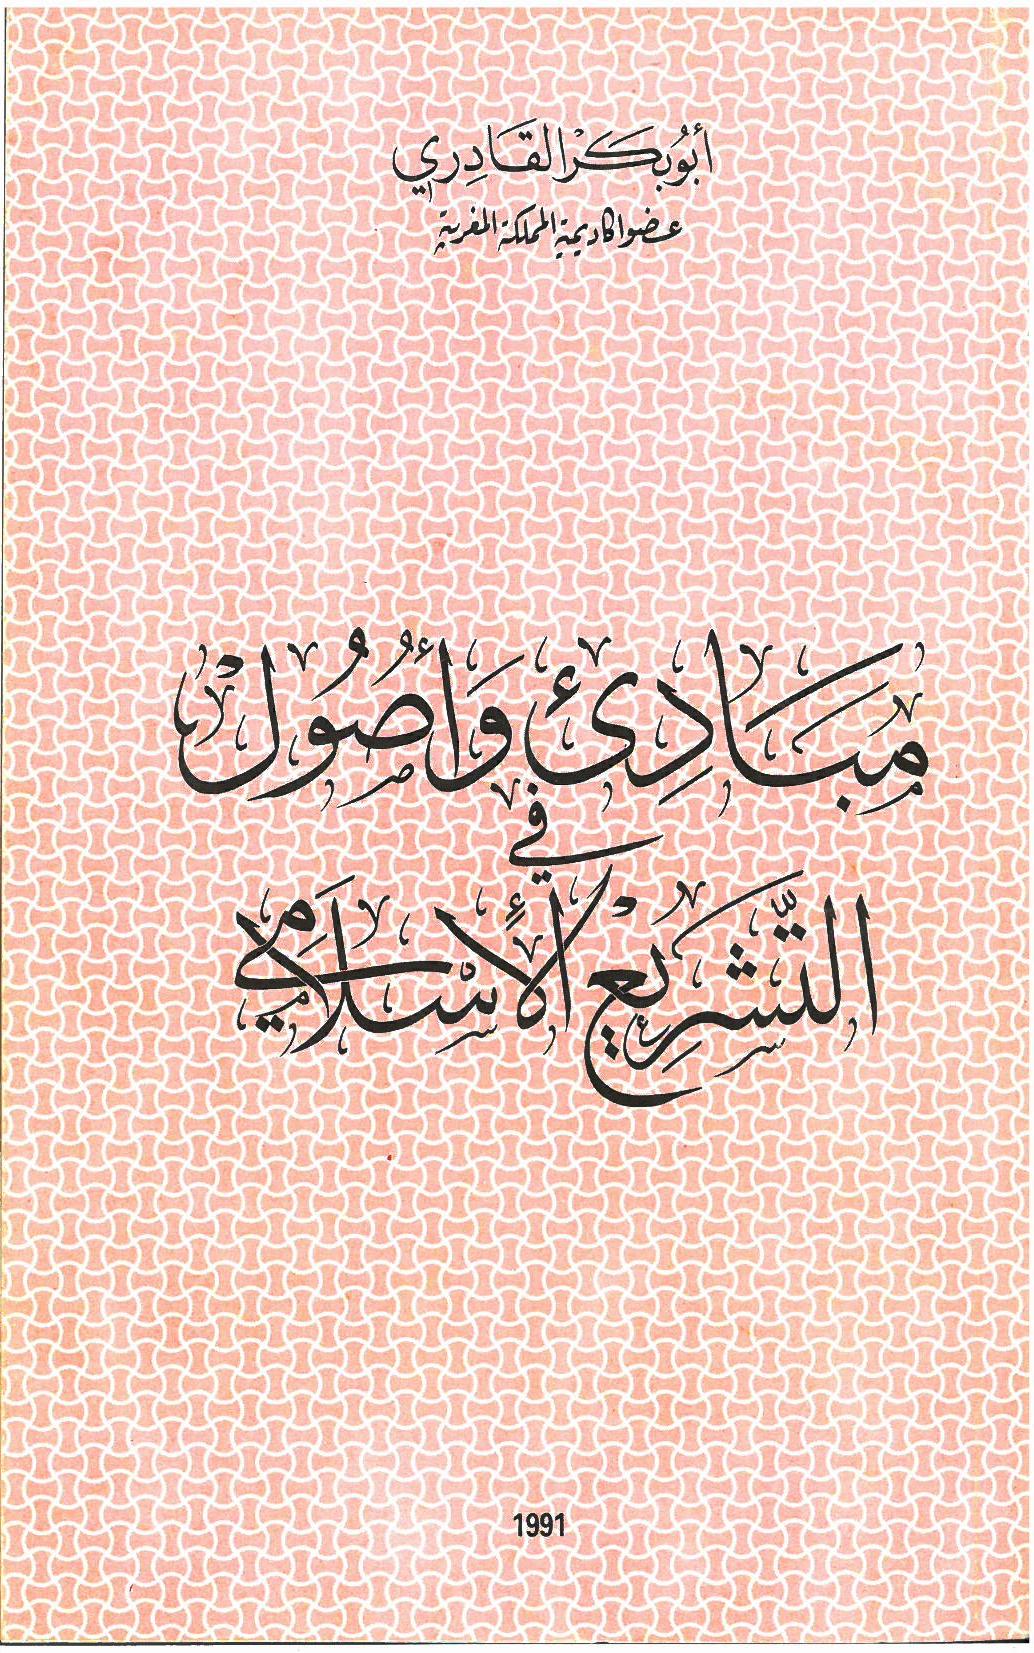 PRINCIPES ET FONDEMENTS DE LA LOI ISLAMIQUE <i>(mabadi’ wa ousoul attachriâ al islami)</i> (1991)